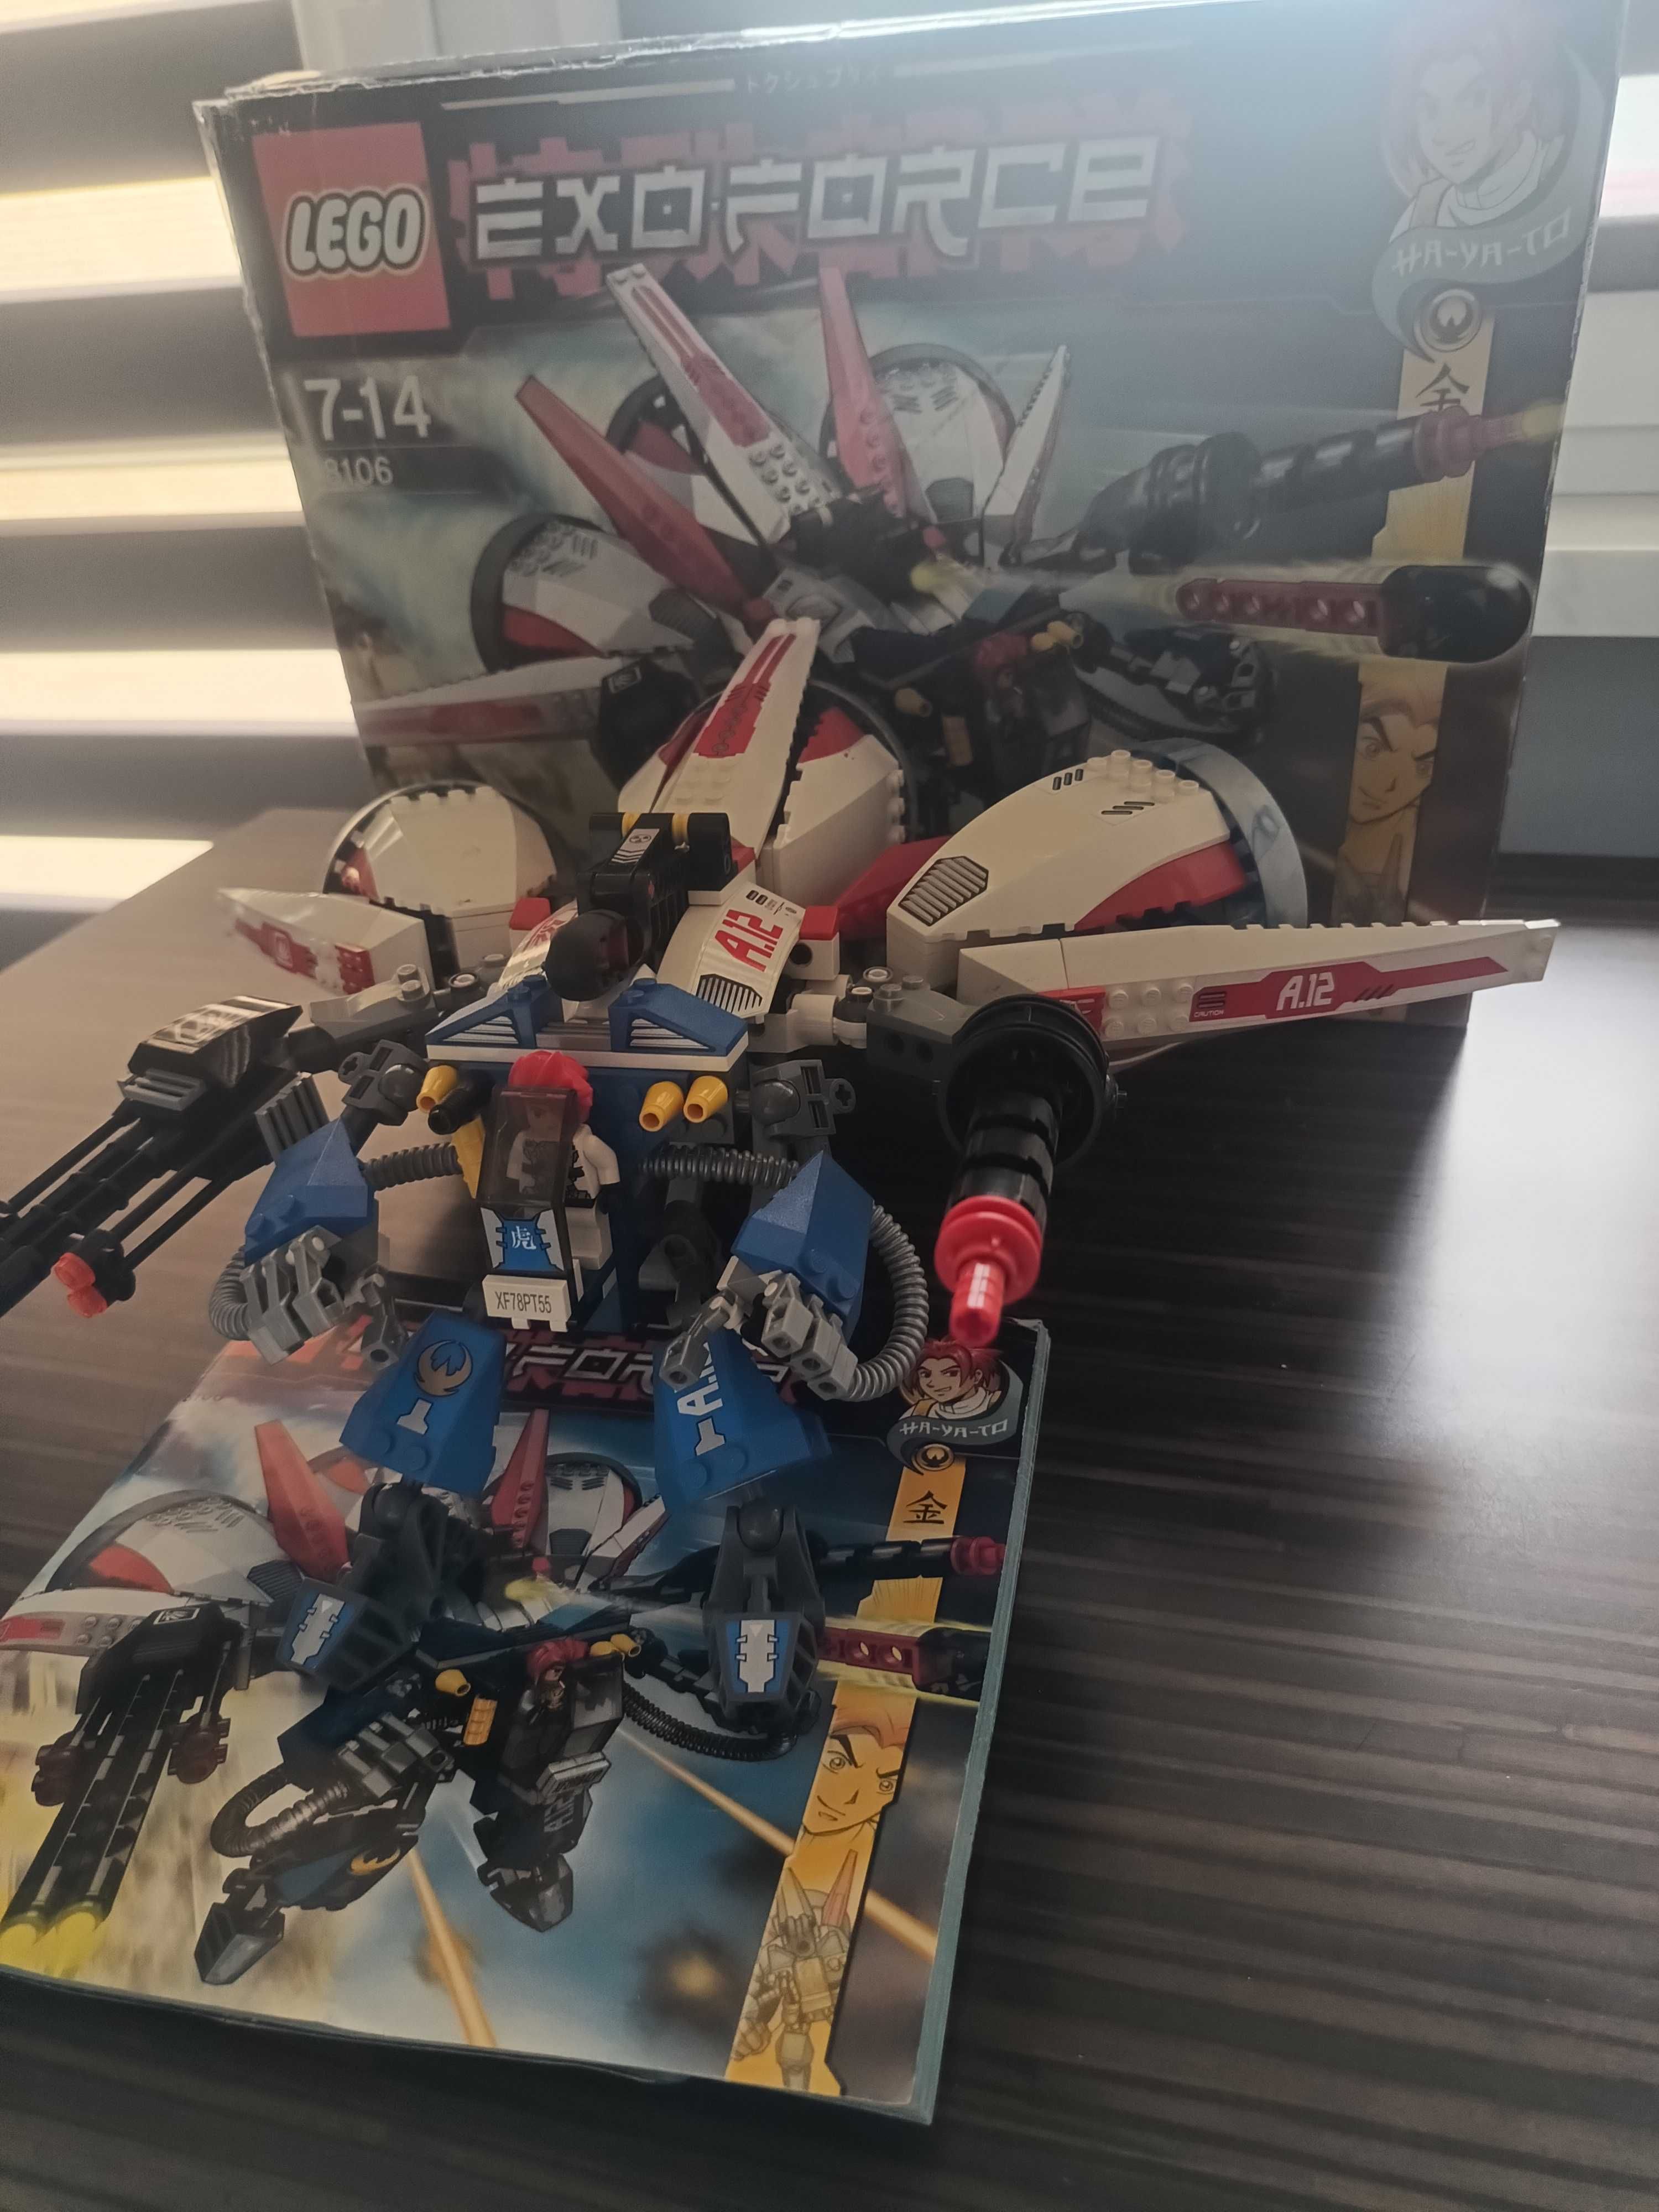 LEGO Exo-Force 8106